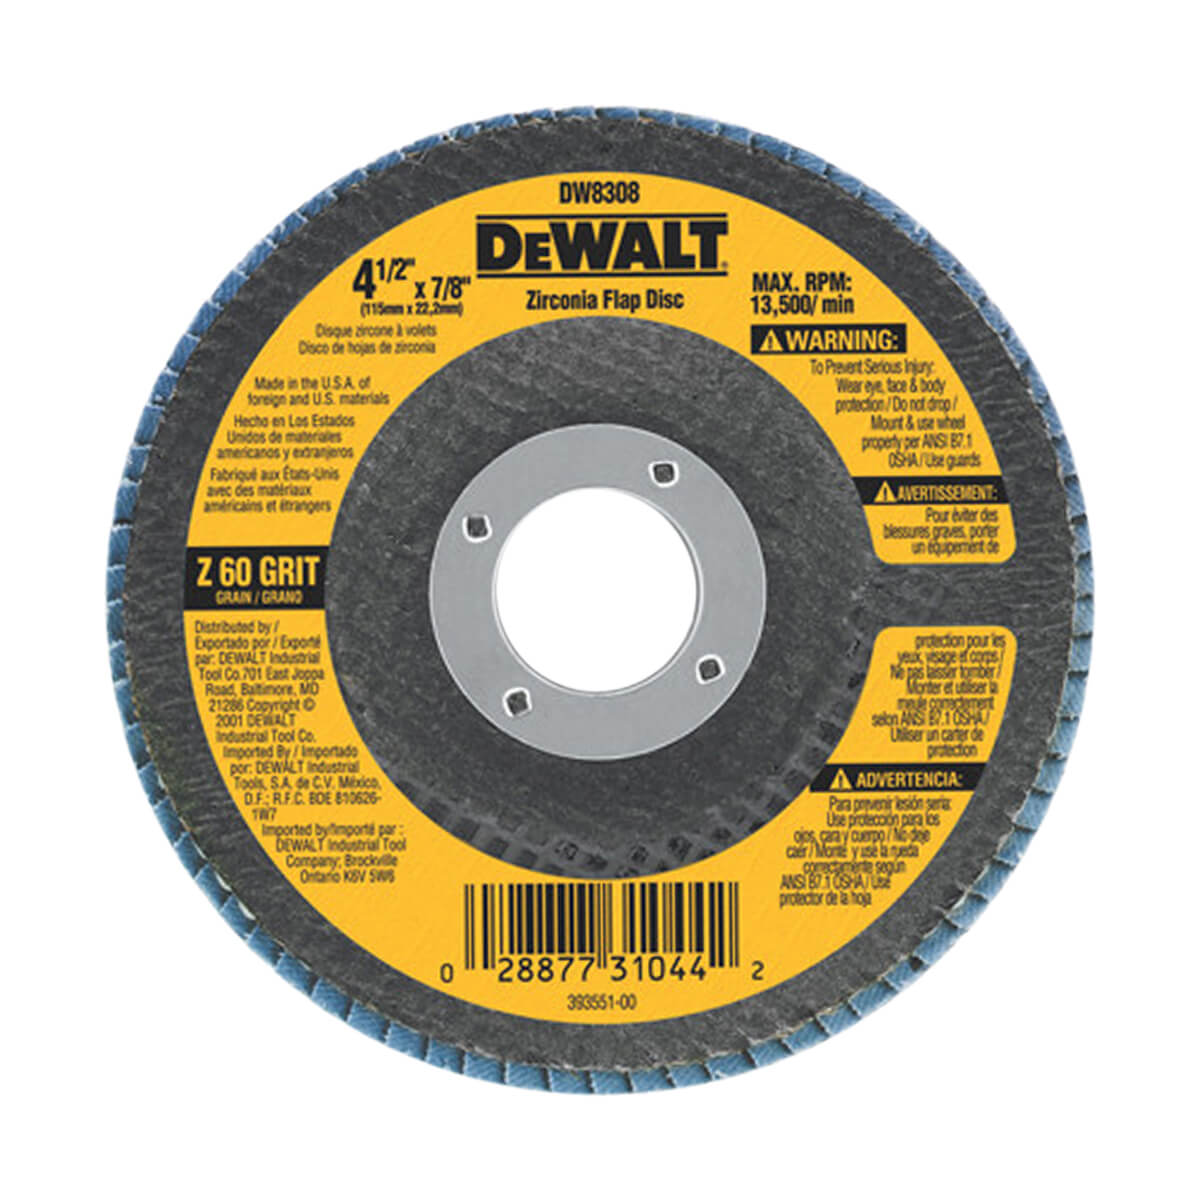 DEWALT® 4.5" X 7/8" Zirconia T29 Flap Disc